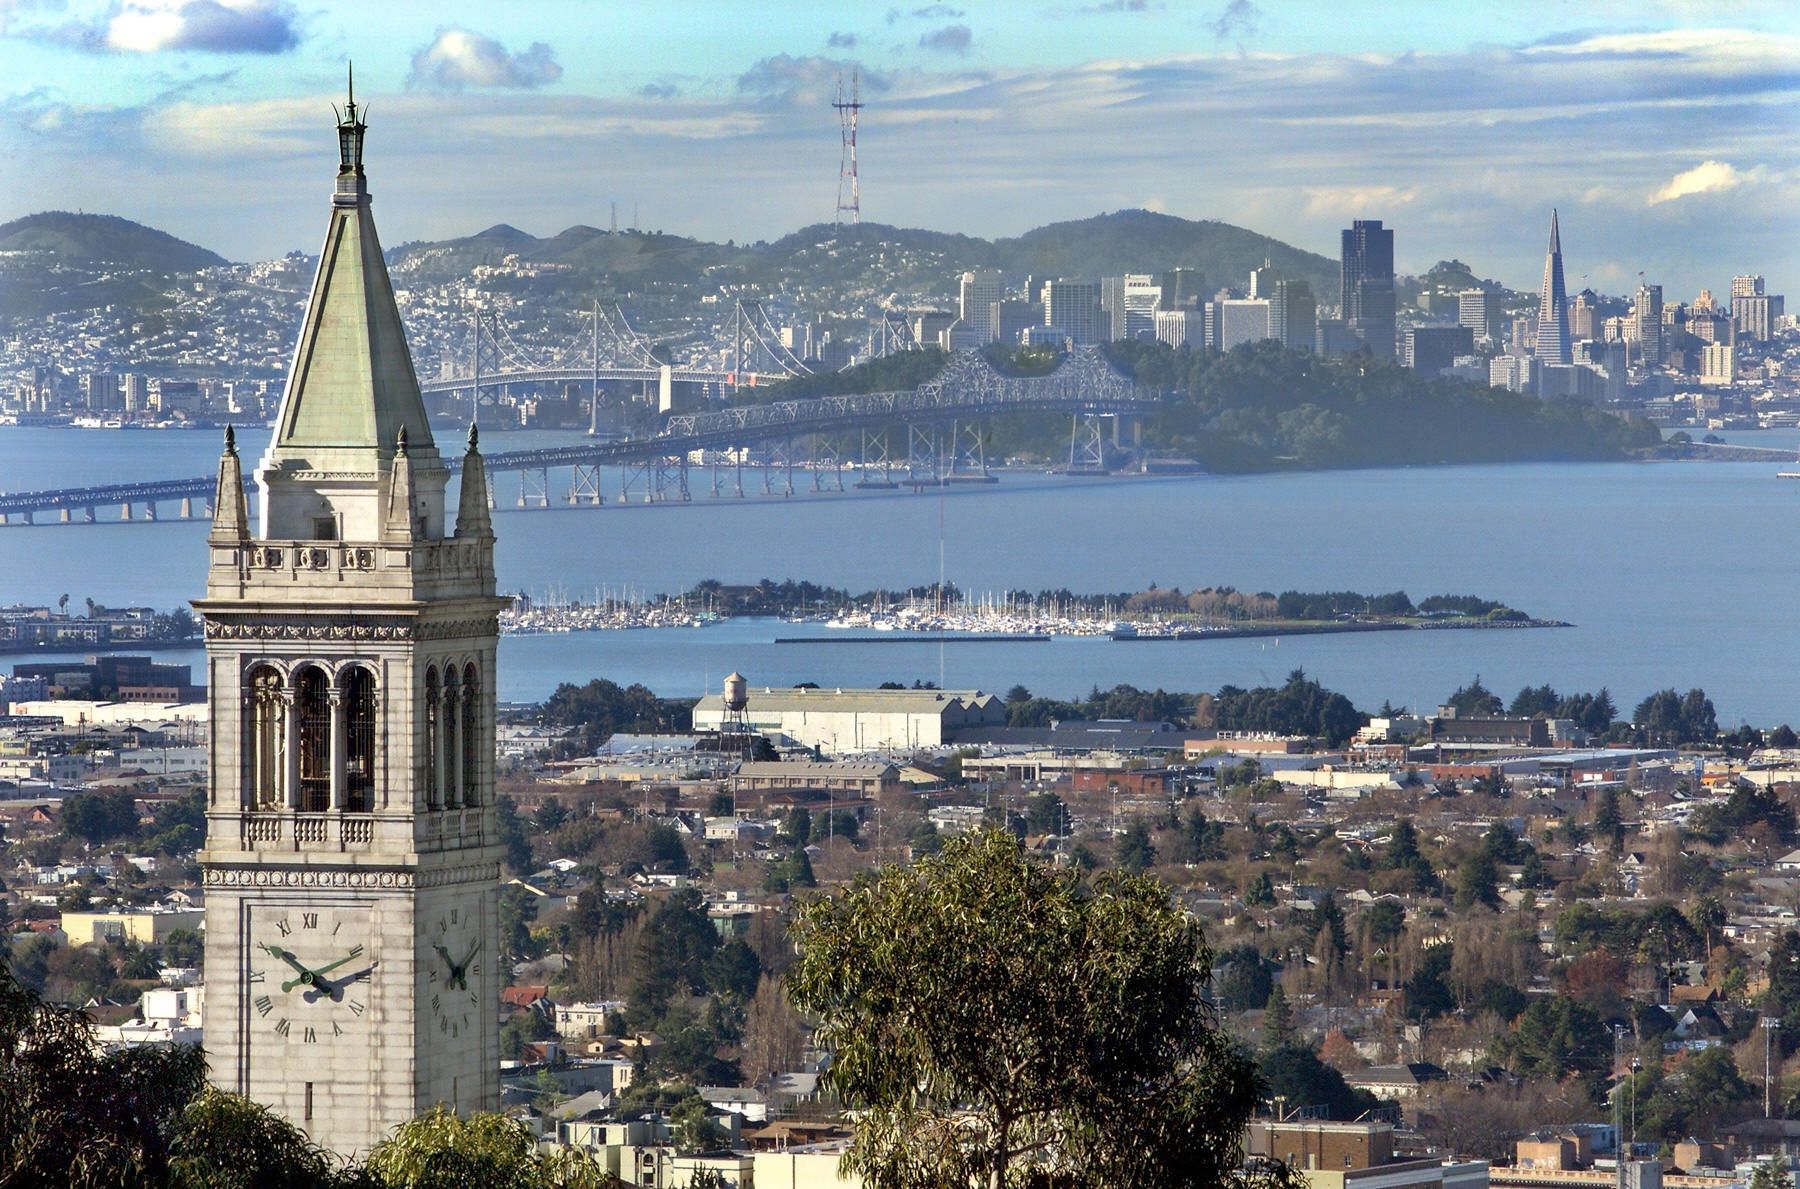 The Berkeley skyline